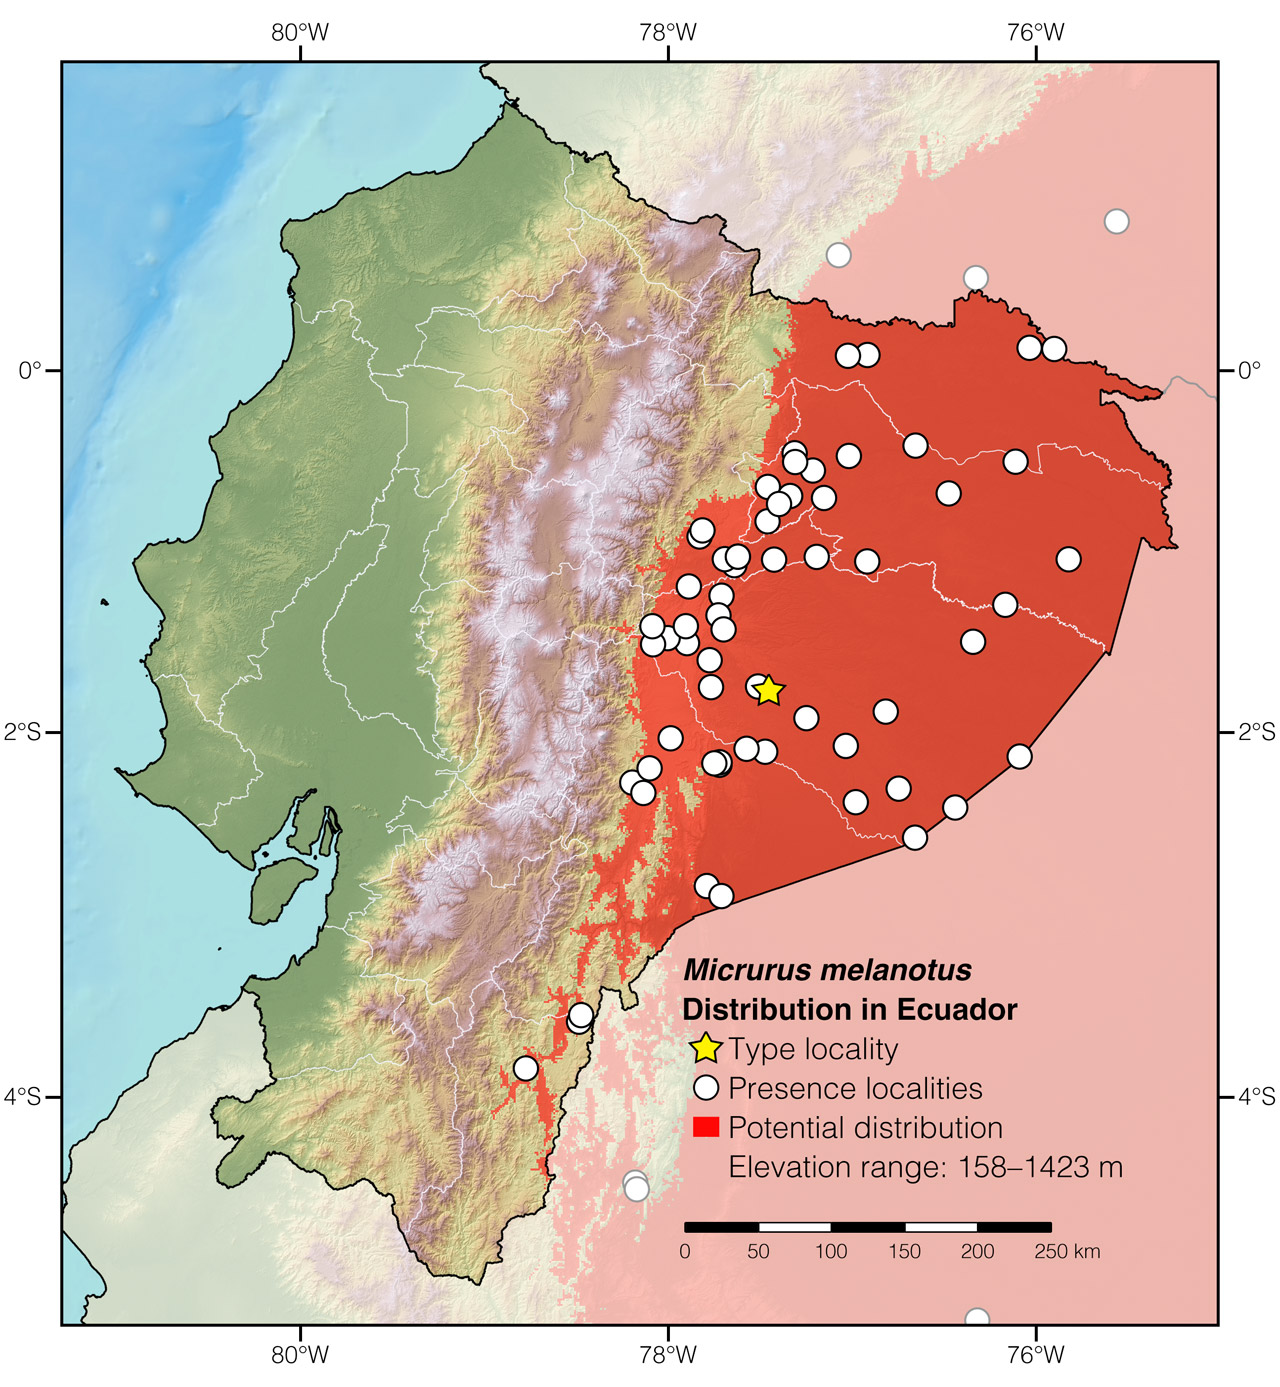 Distribution of Micrurus melanotus in Ecuador